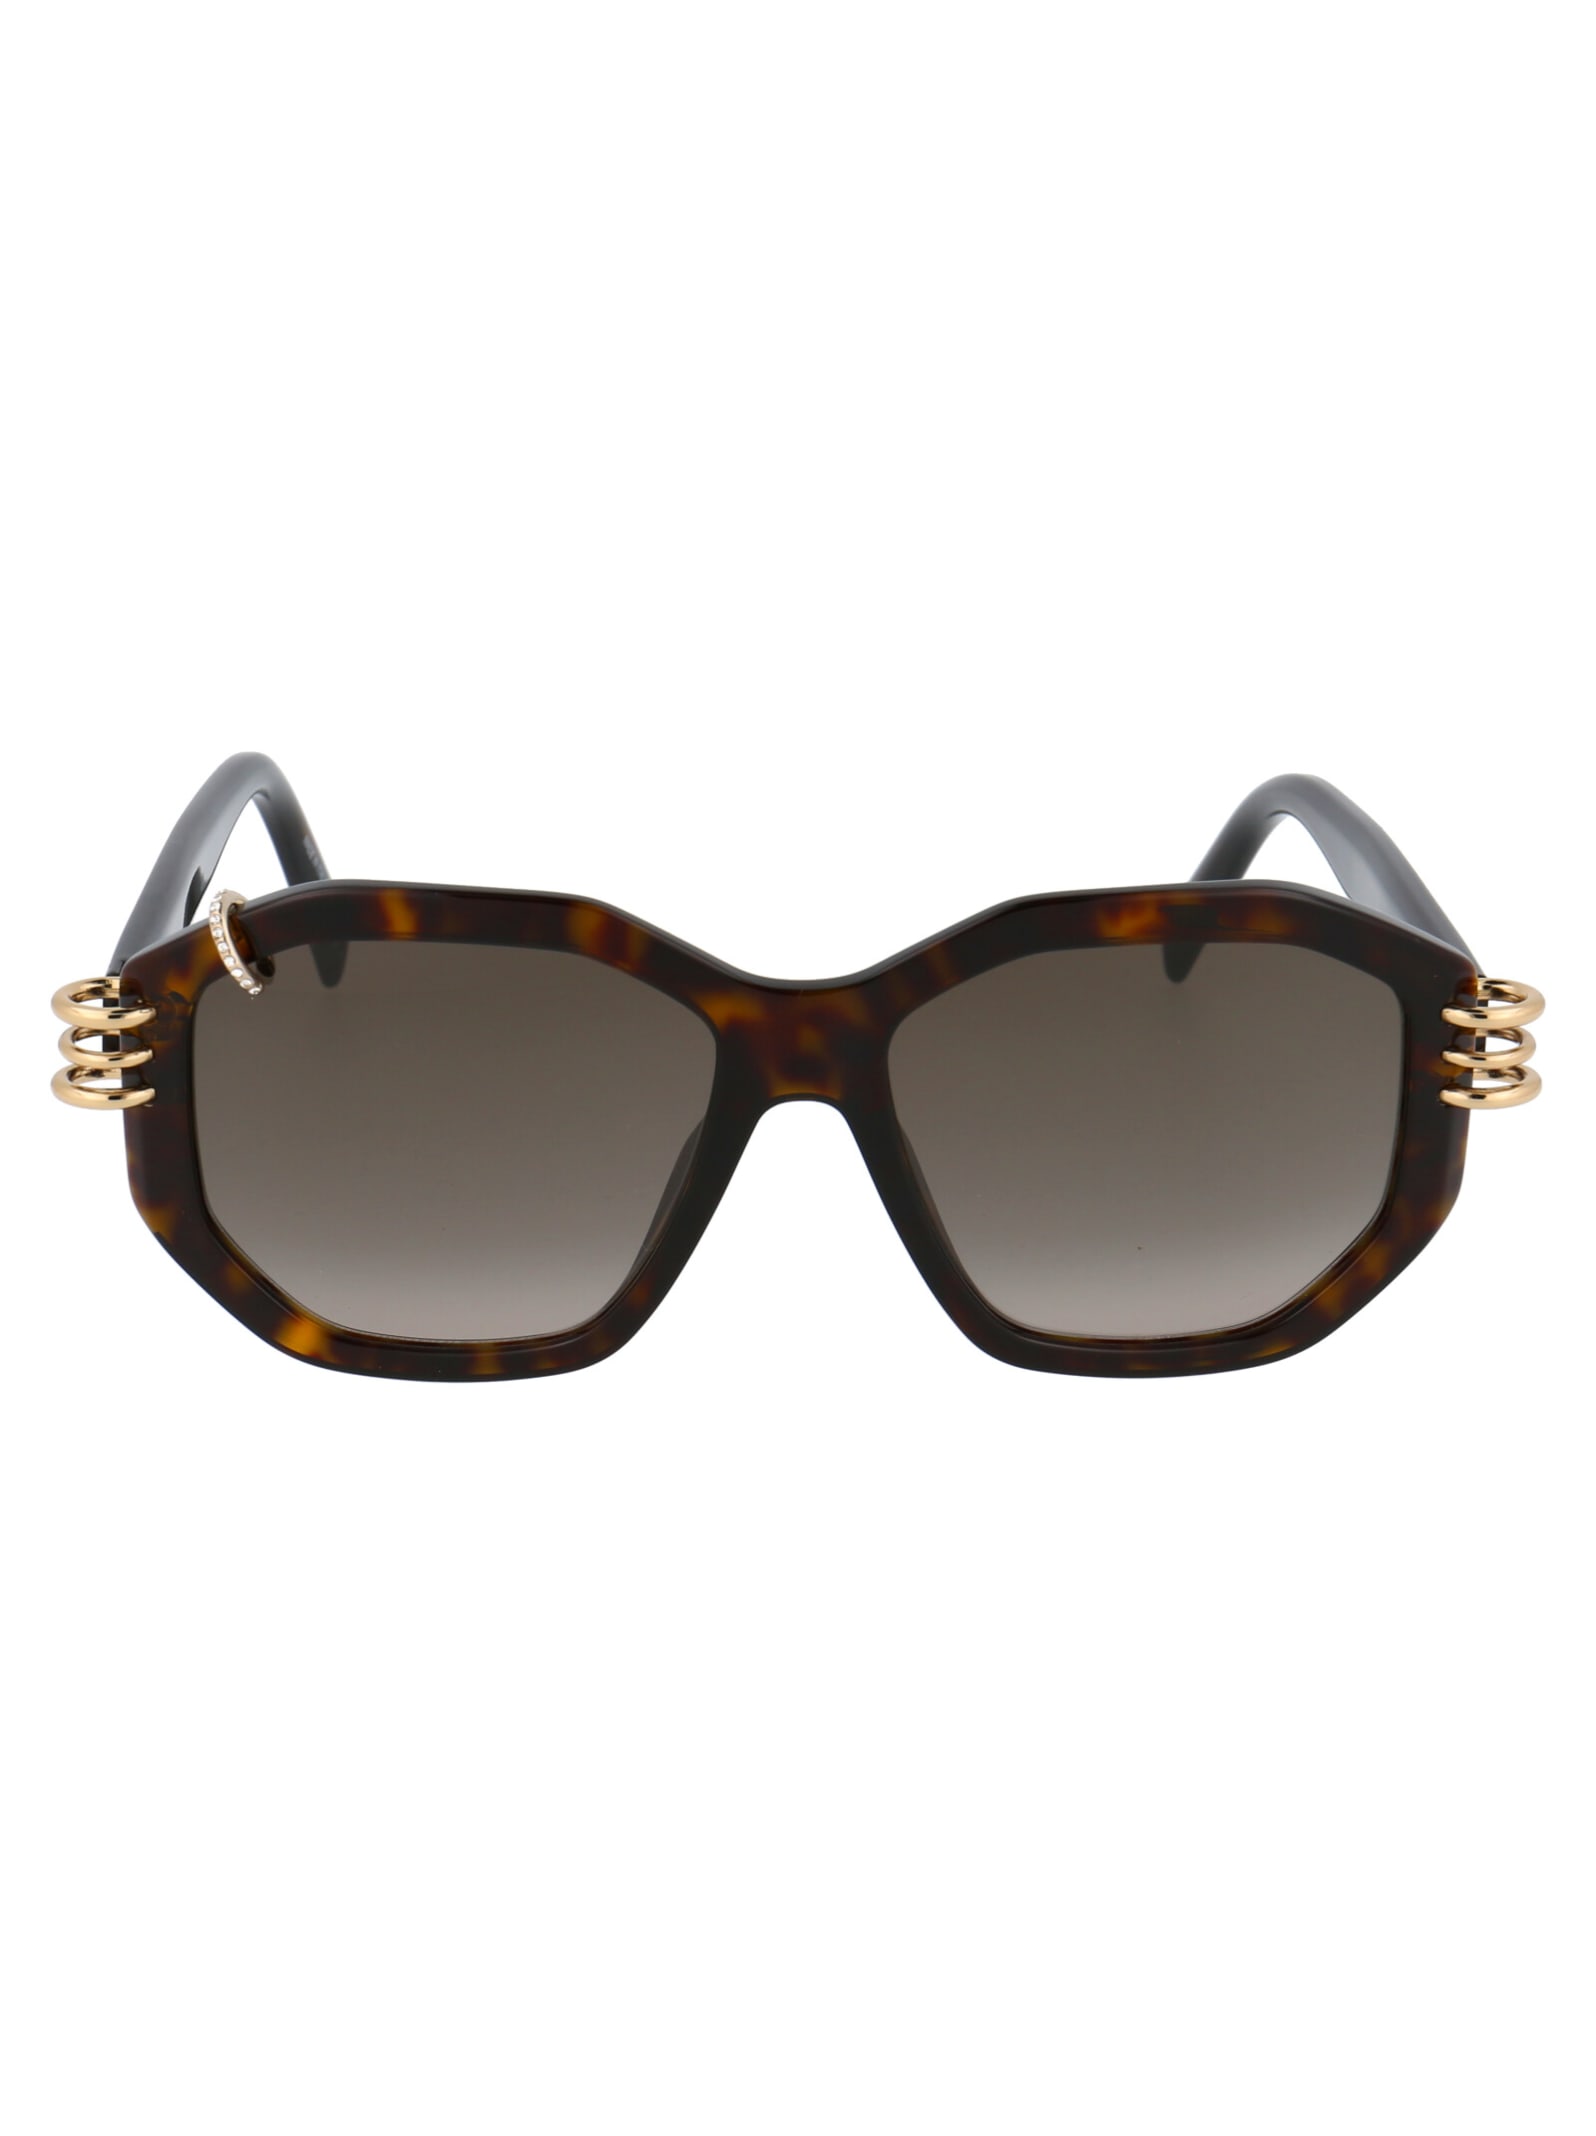 Givenchy Eyewear Gv 7175/g/s Sunglasses